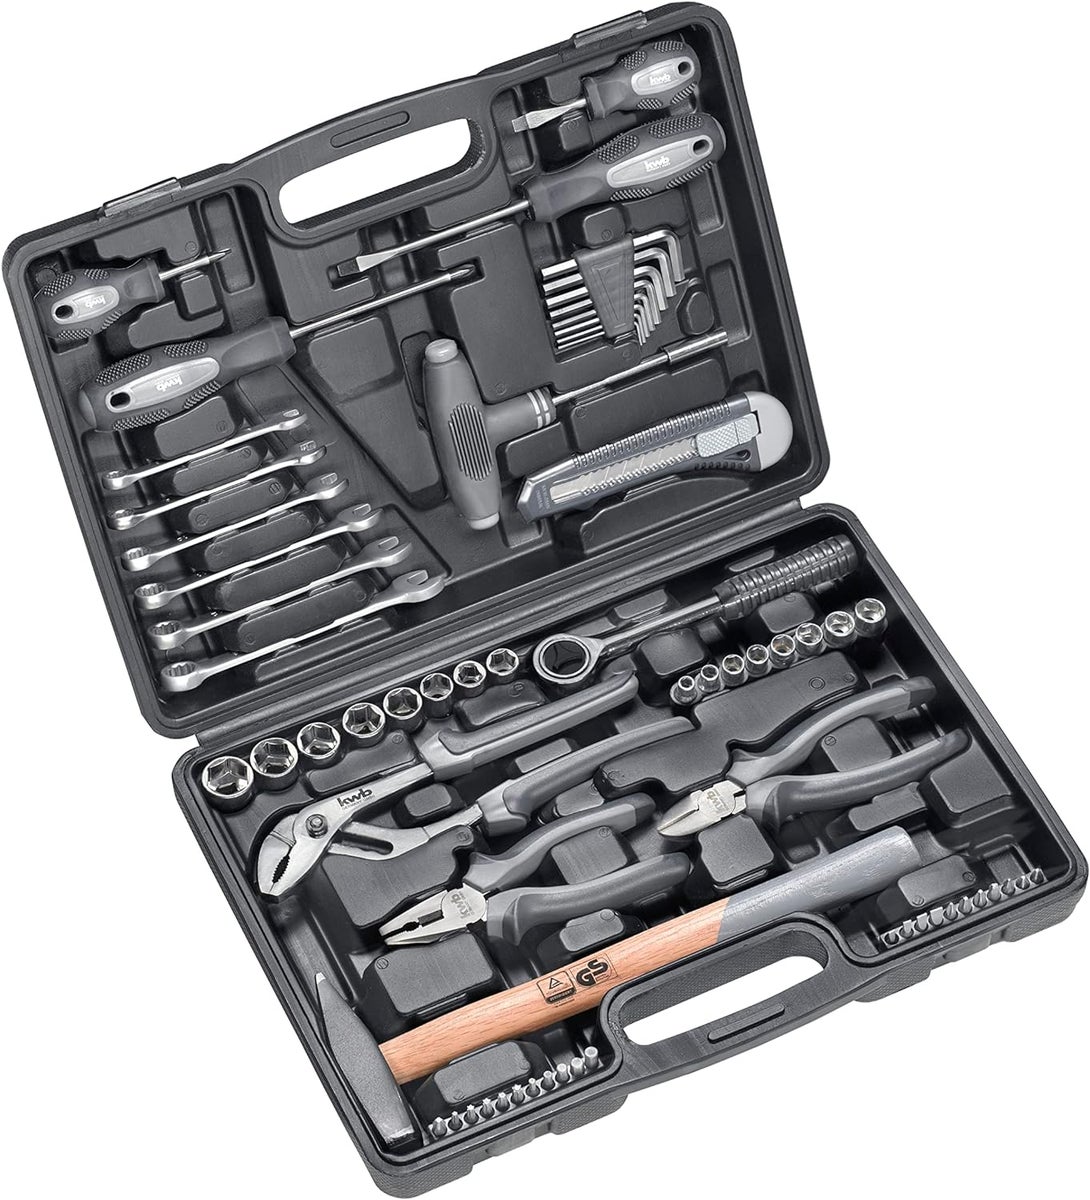 kwb Werkzeugkoffer aus robustem Hartkunststoff inkl. 63-tlg. hochwertigem Werkzeug-Set als solide Grundausstattung für leichte Anwendungsfälle im Haushalt, der Werkstatt oder dem mobilen Einsatz-0